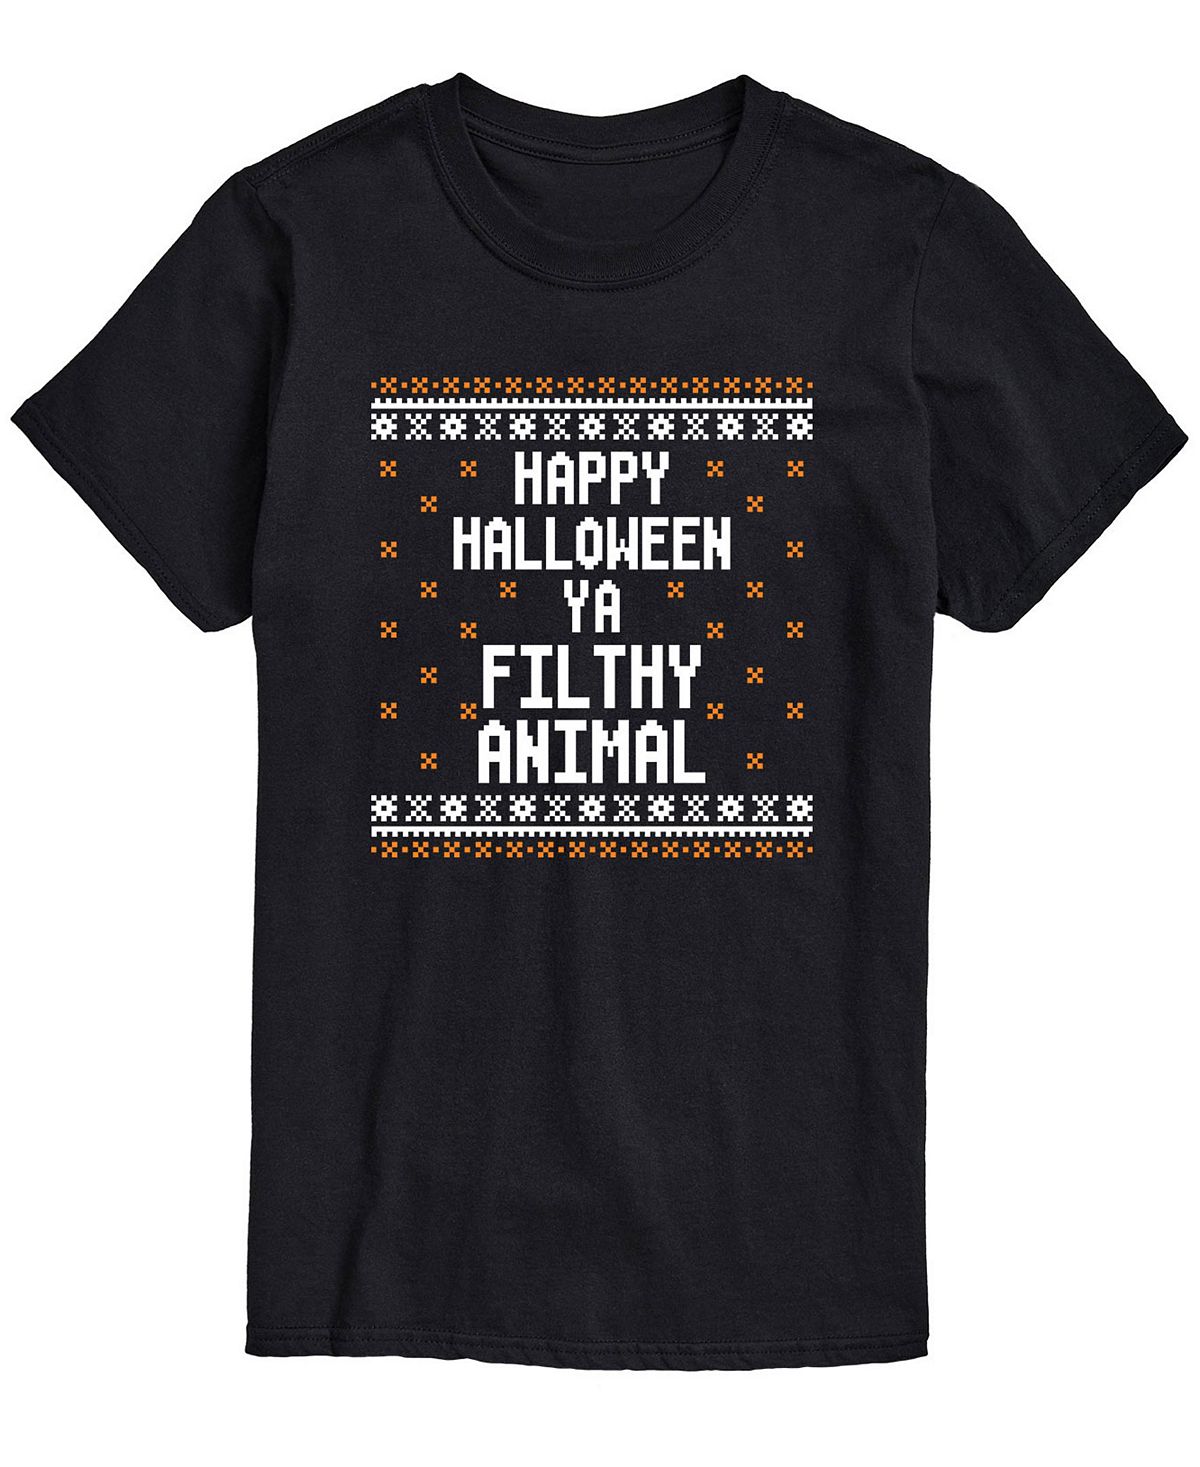 Мужская футболка классического кроя Happy Halloween AIRWAVES